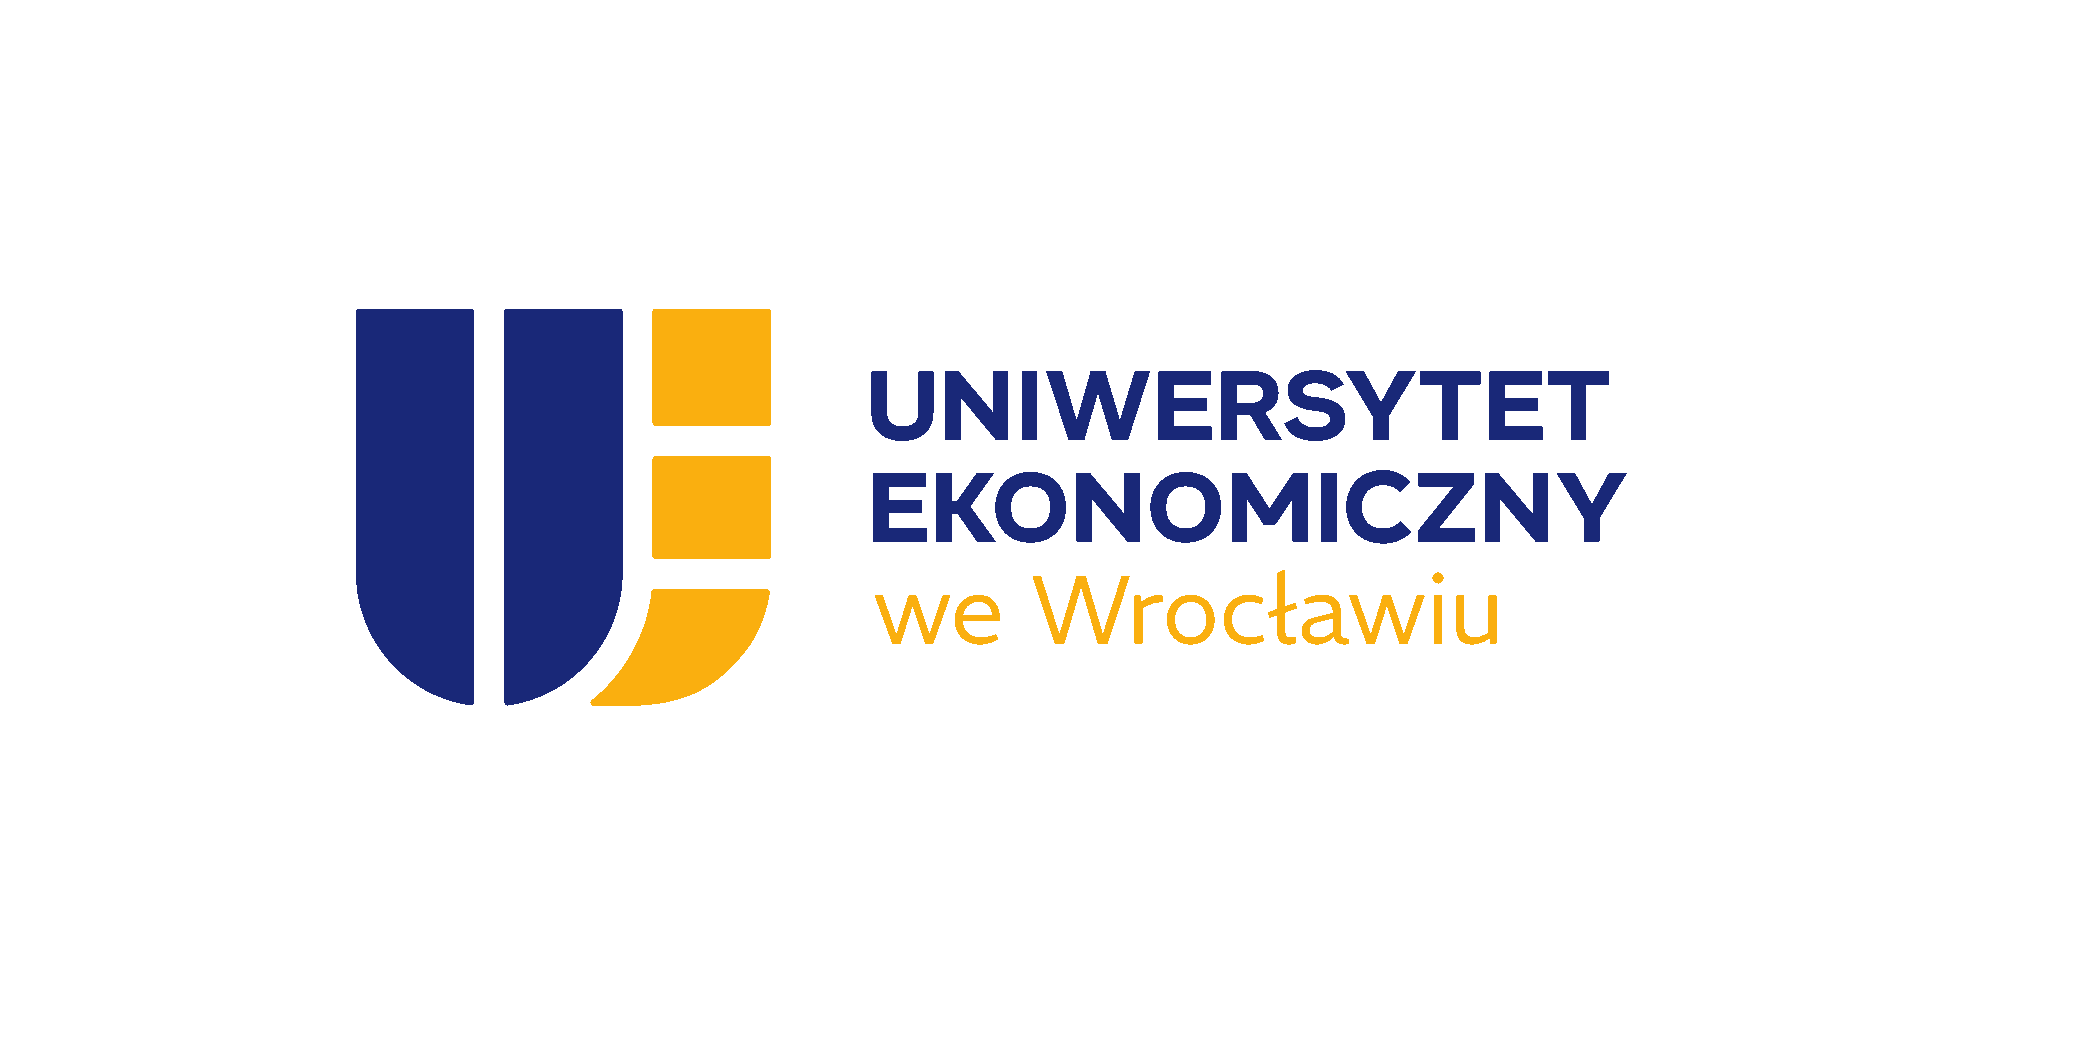 Uniwersytet Ekonomiczny we Wrocławiu (UE) logo